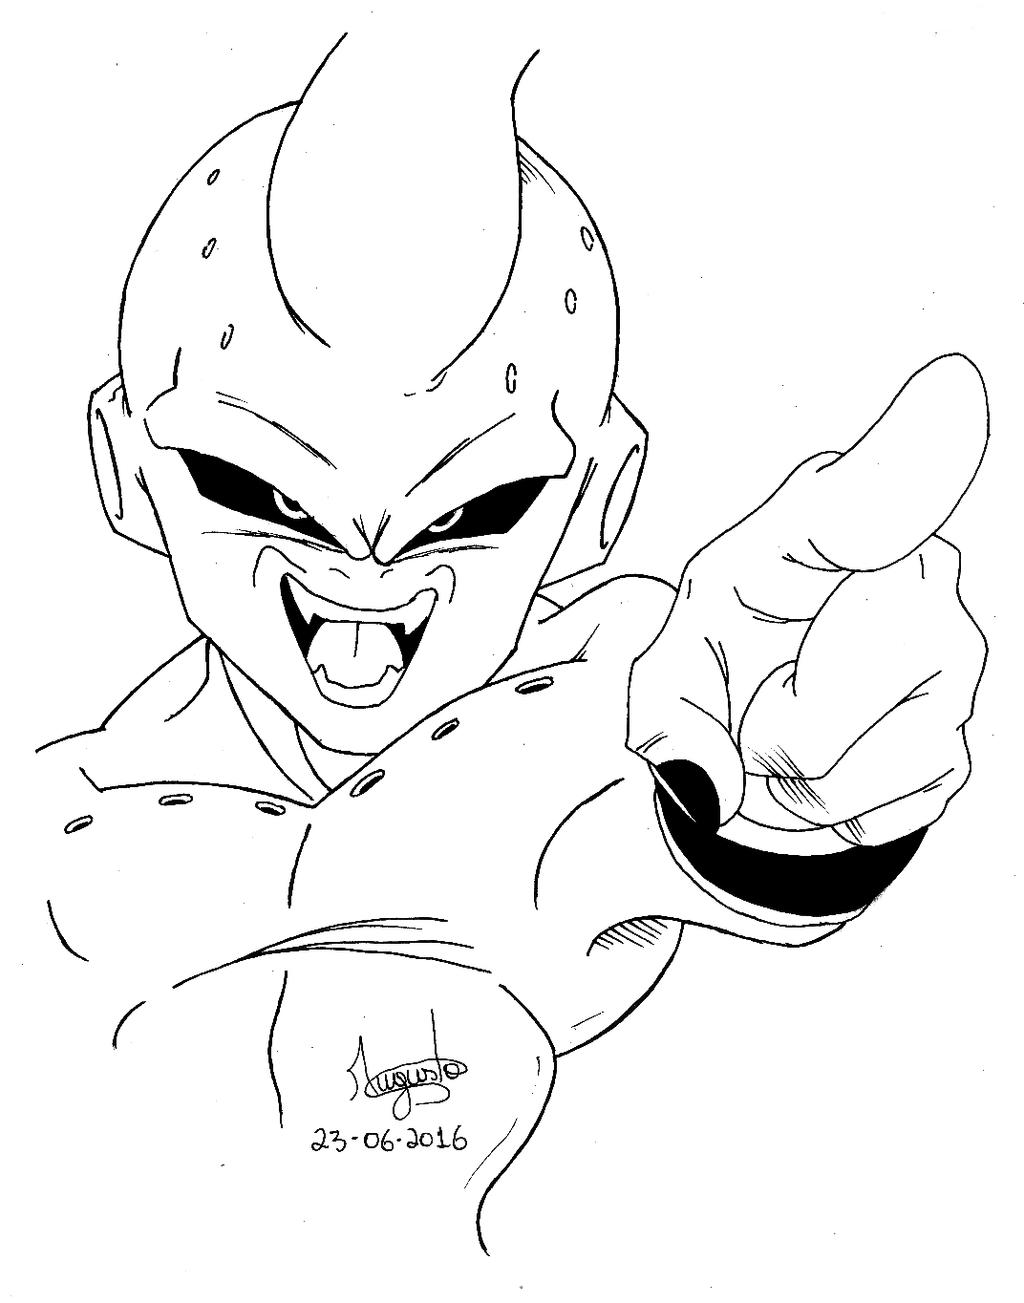 IZ Desenhos - Desenho do Kid Boo de Dragon Ball Z